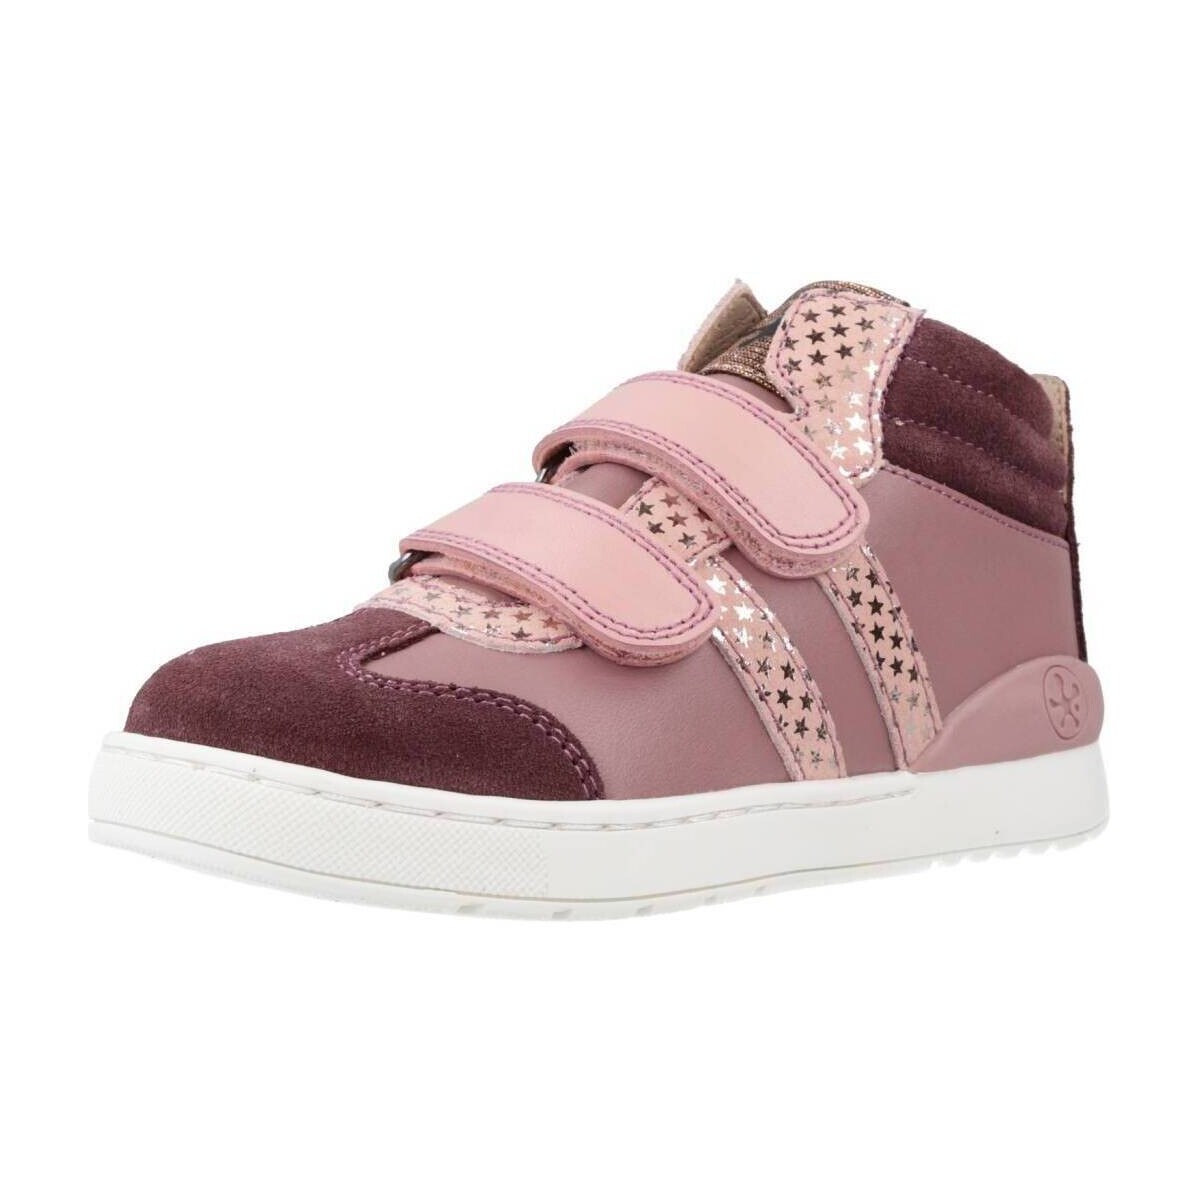 Παπούτσια Κορίτσι Χαμηλά Sneakers Biomecanics 231204B Red